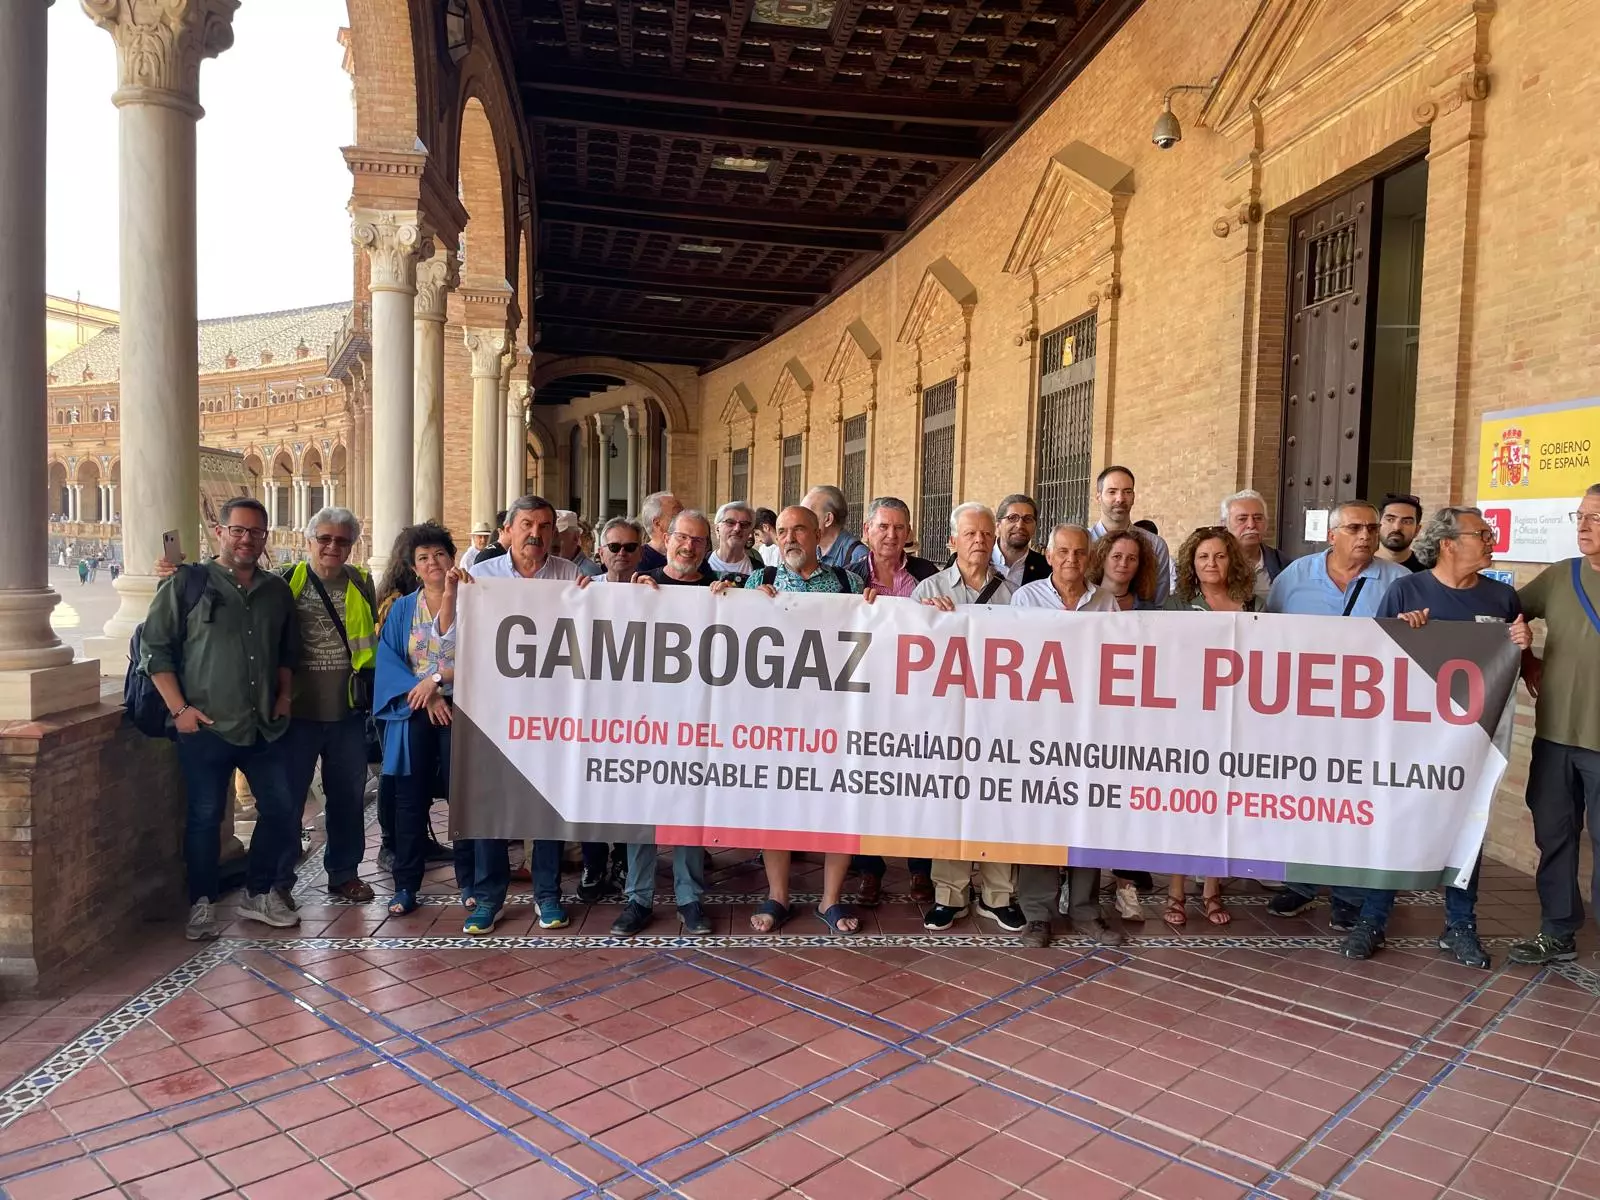 Historia de un  expolio : cómo Queipo de Llano se hizo con el cortijo Gambogaz en Sevilla